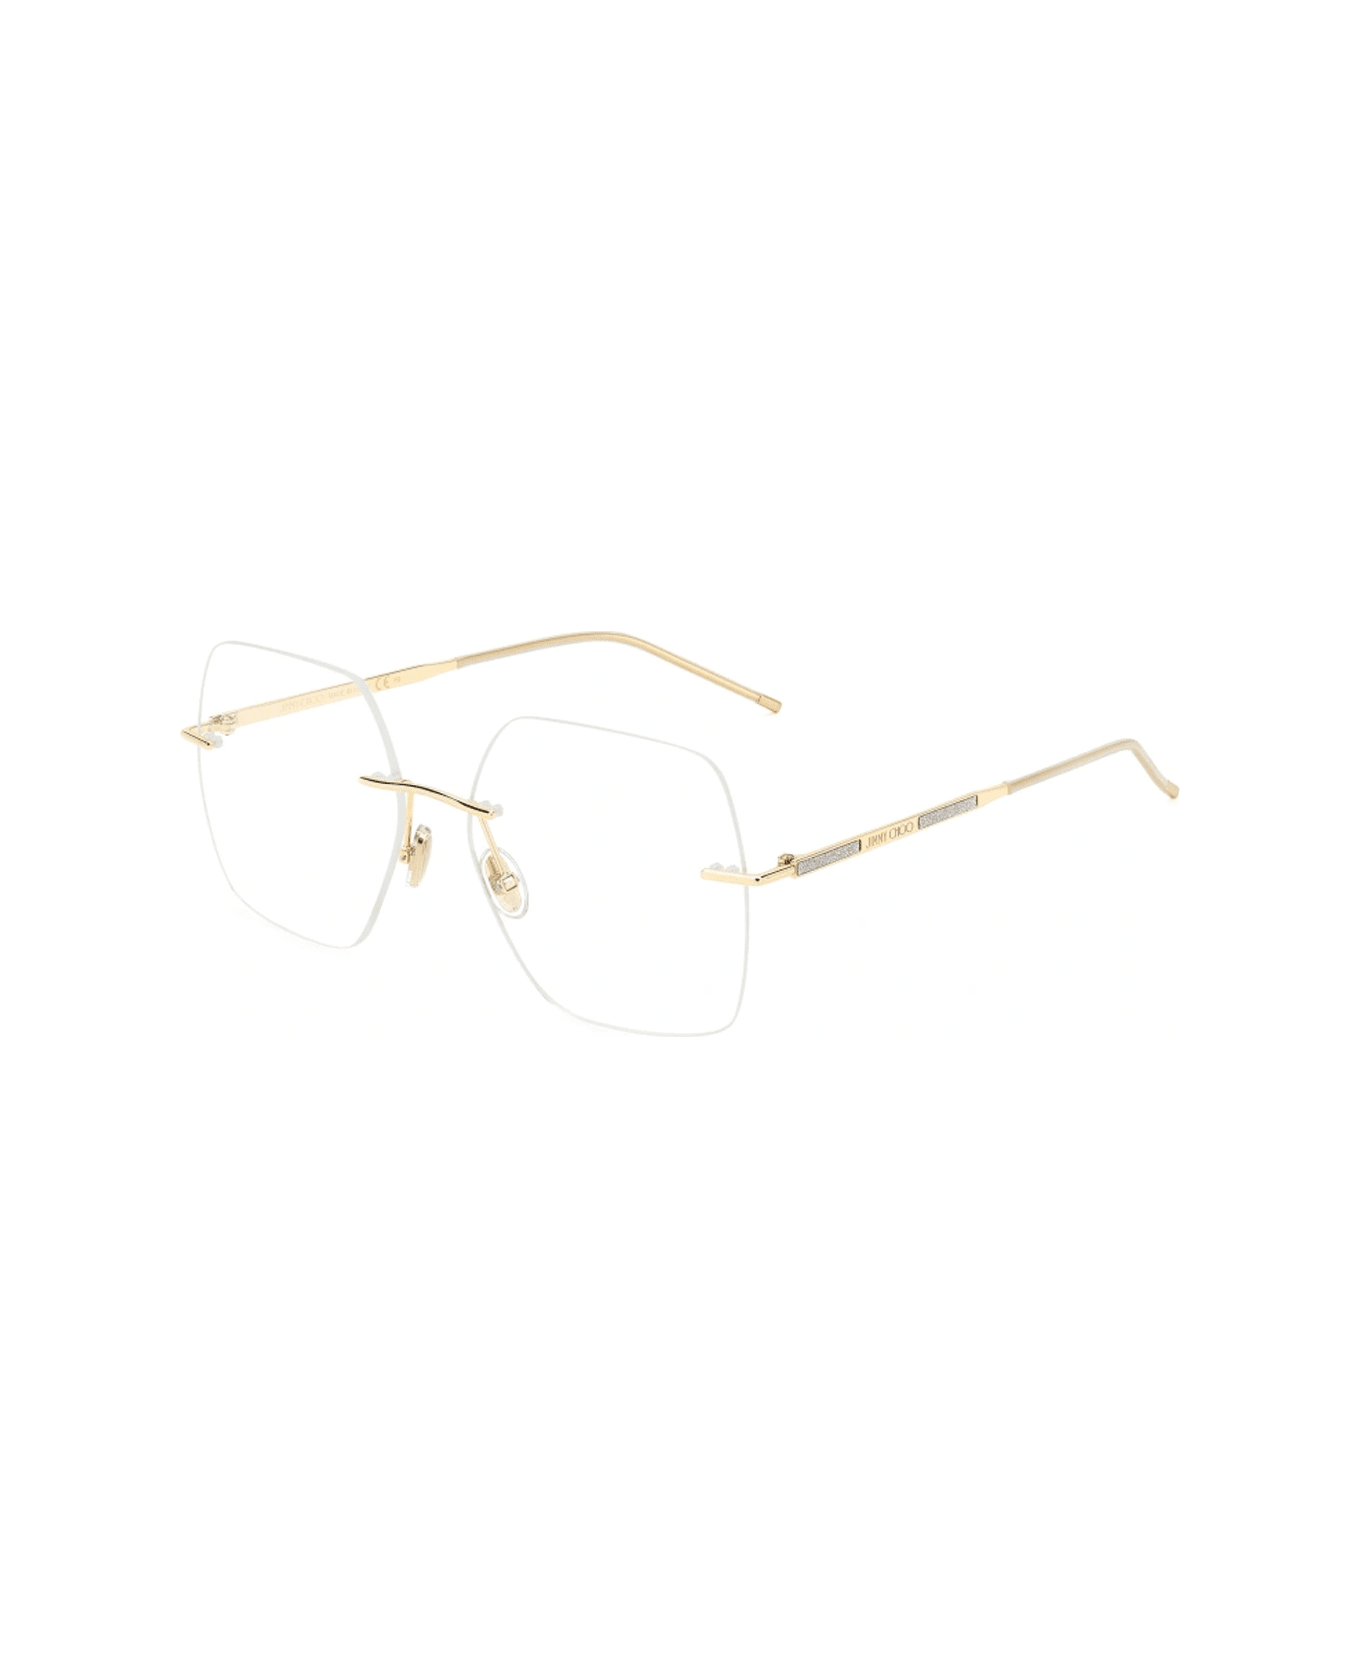 Jimmy Choo Eyewear Jc364/g 83i/17 Glasses - Oro